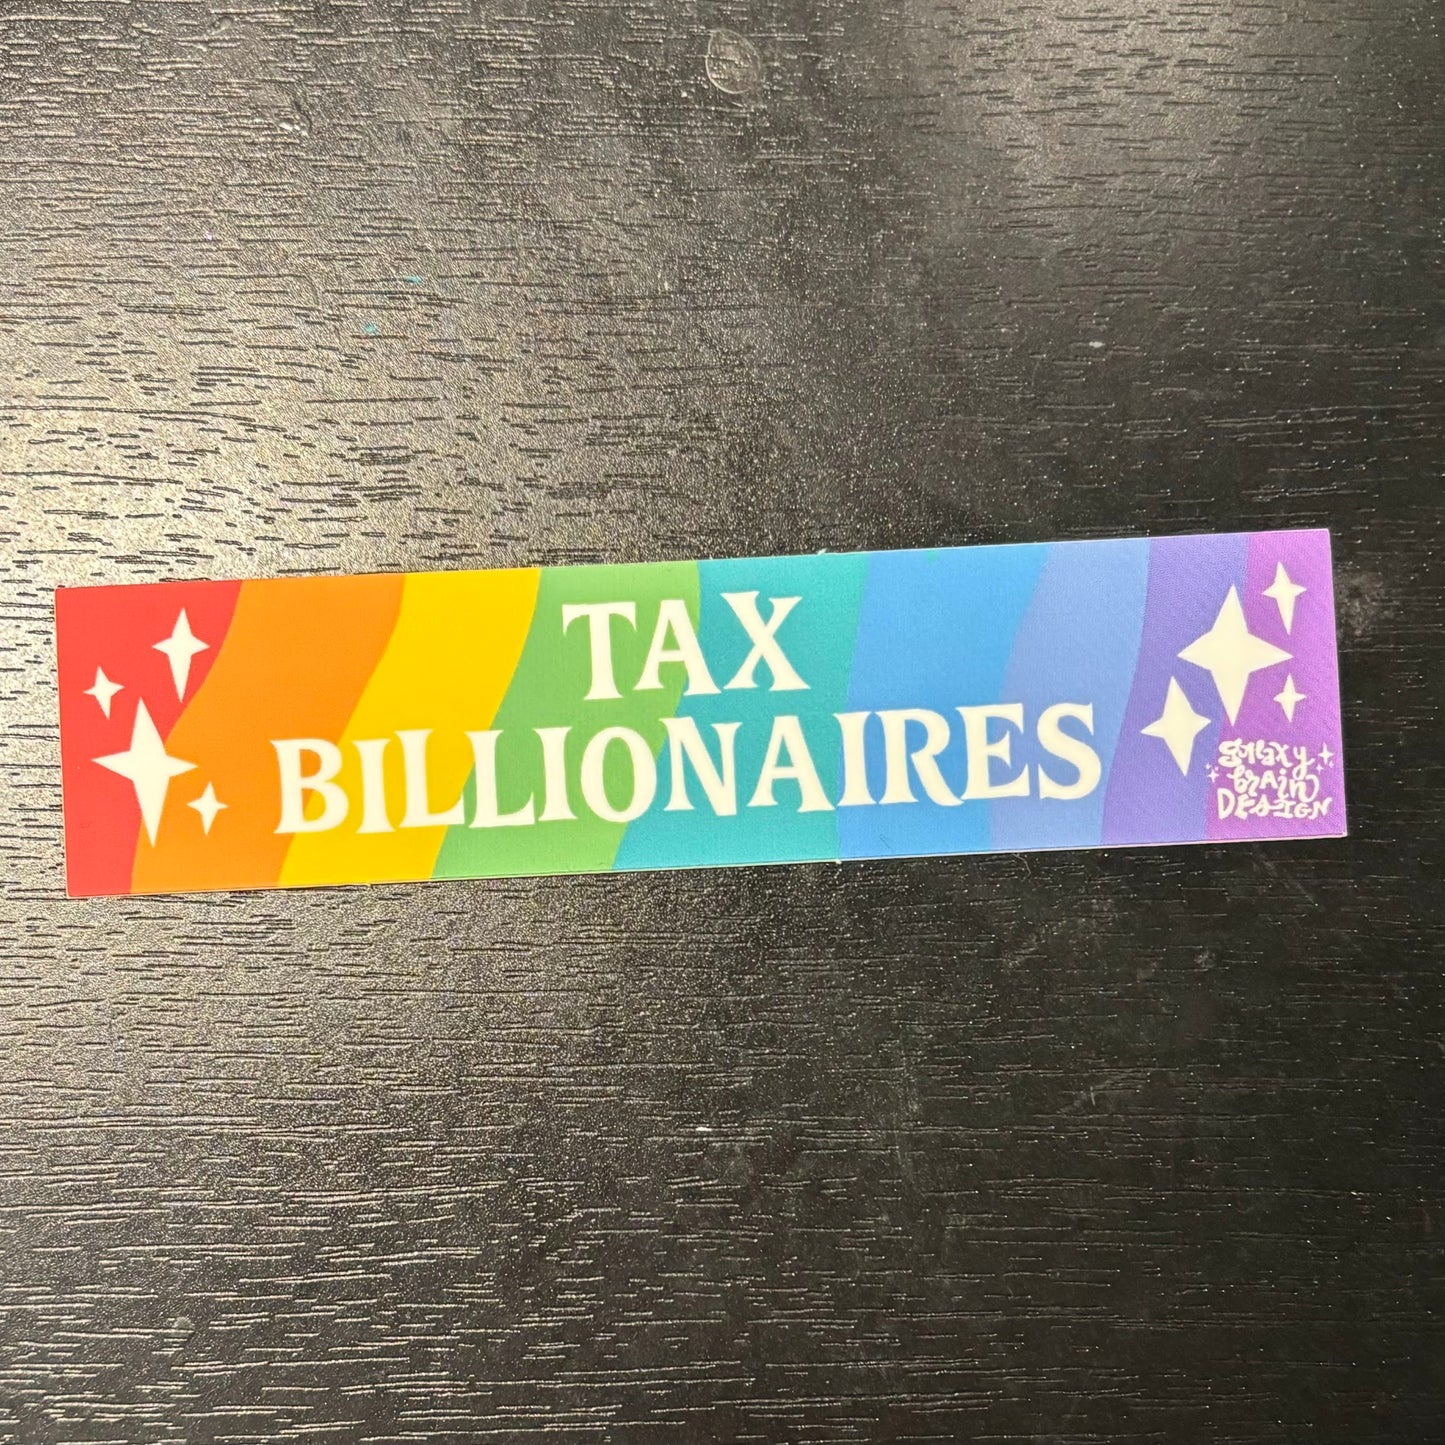 Tax Billionaires Smartphone Bumper Sticker